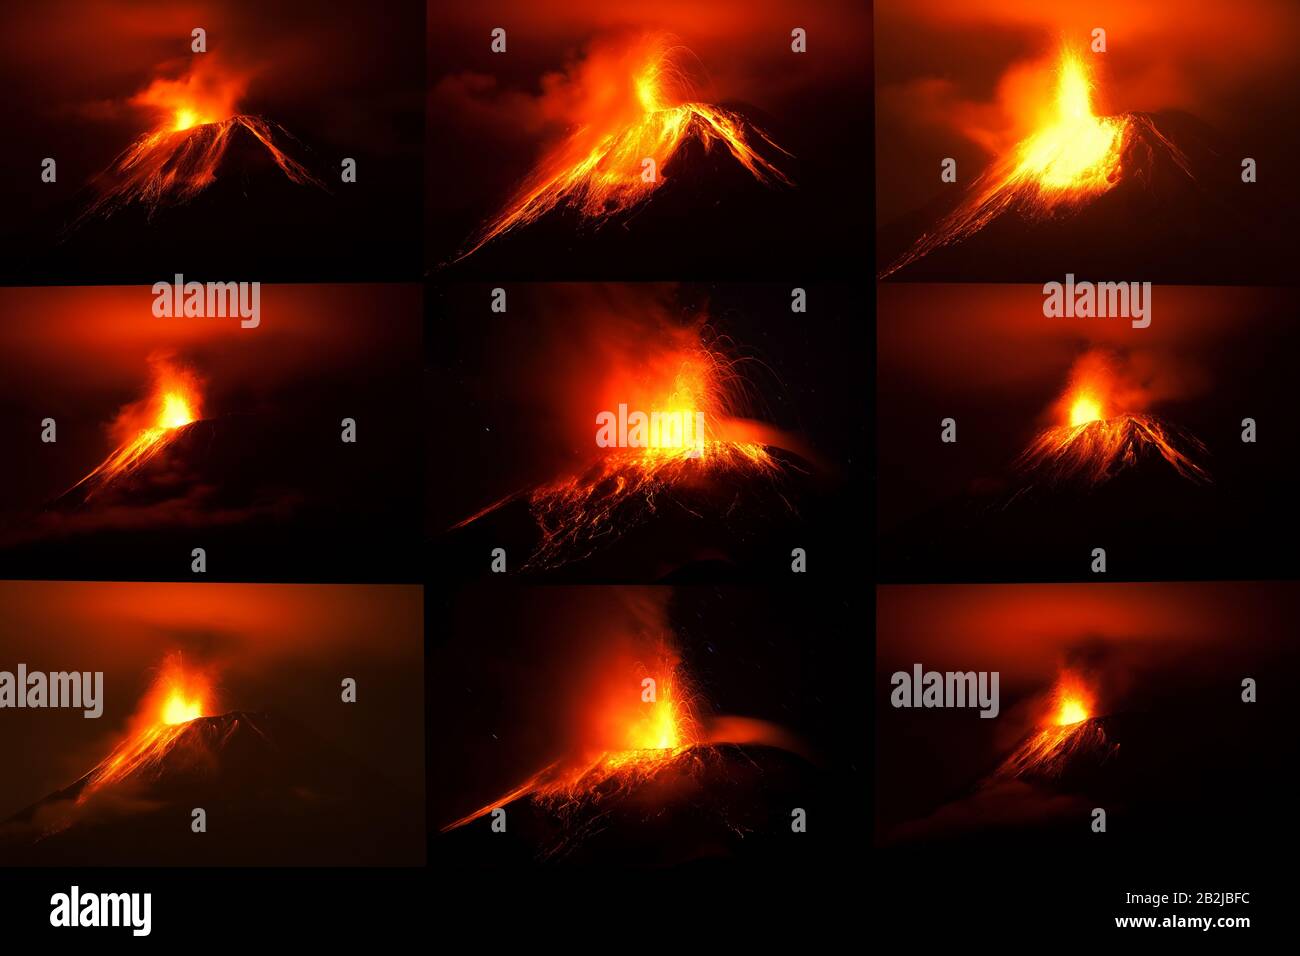 Sammlung von 9 Bilder der Vulkan Tungurahua mit verschiedenen Formen der Lavaströme, geschossen mit der Canon EOS 5D Mark II Umgerechnet von Raw kleine Menge Stockfoto